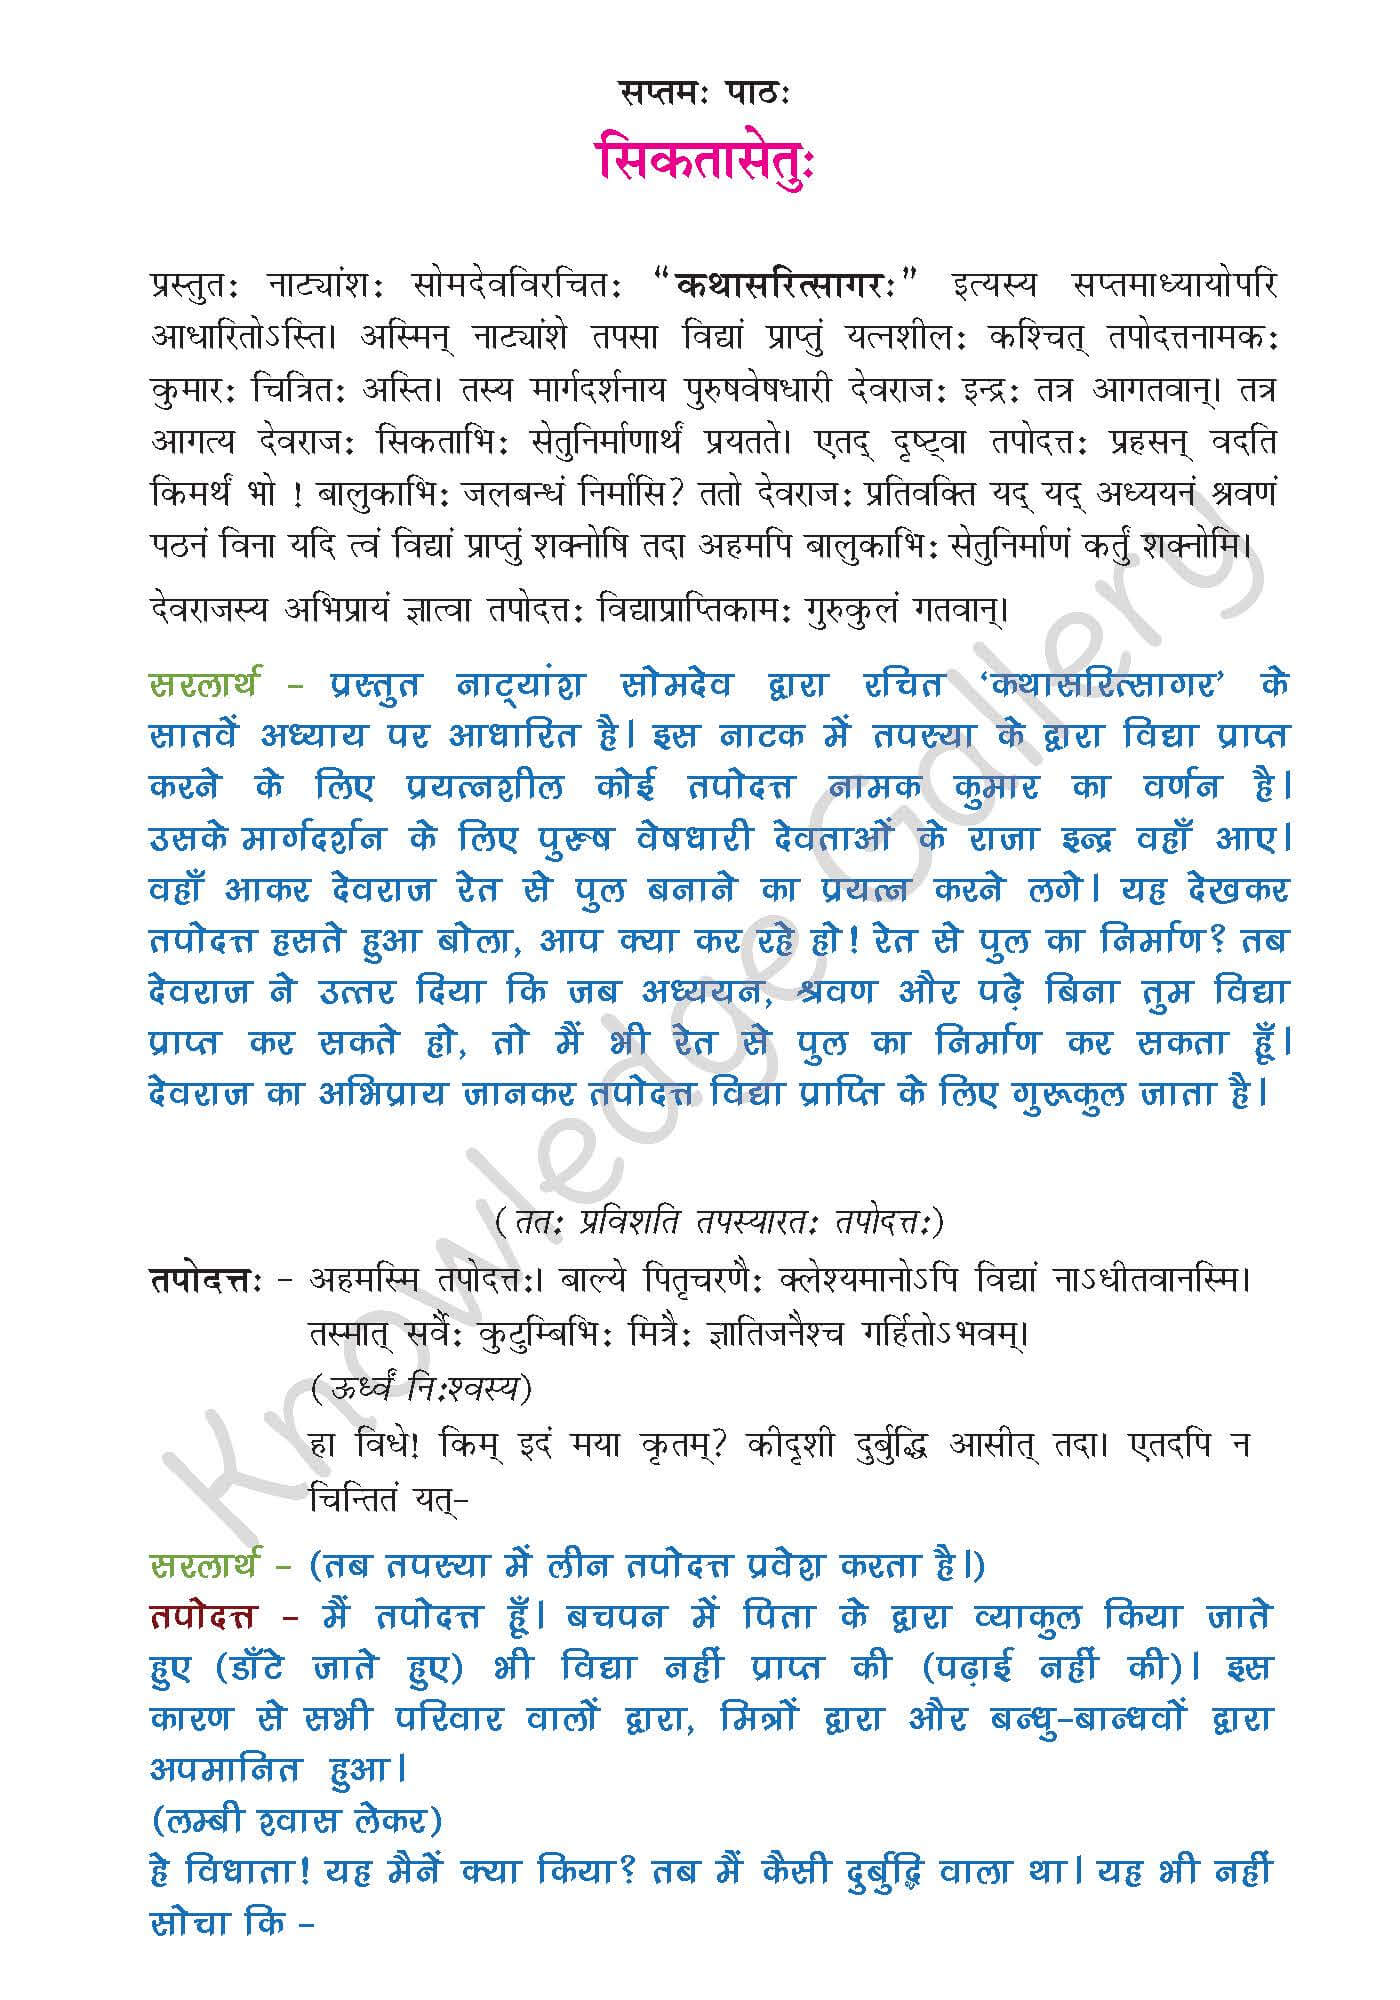 NCERT Solution For Class 9 Sanskrit Chapter 7 part 1